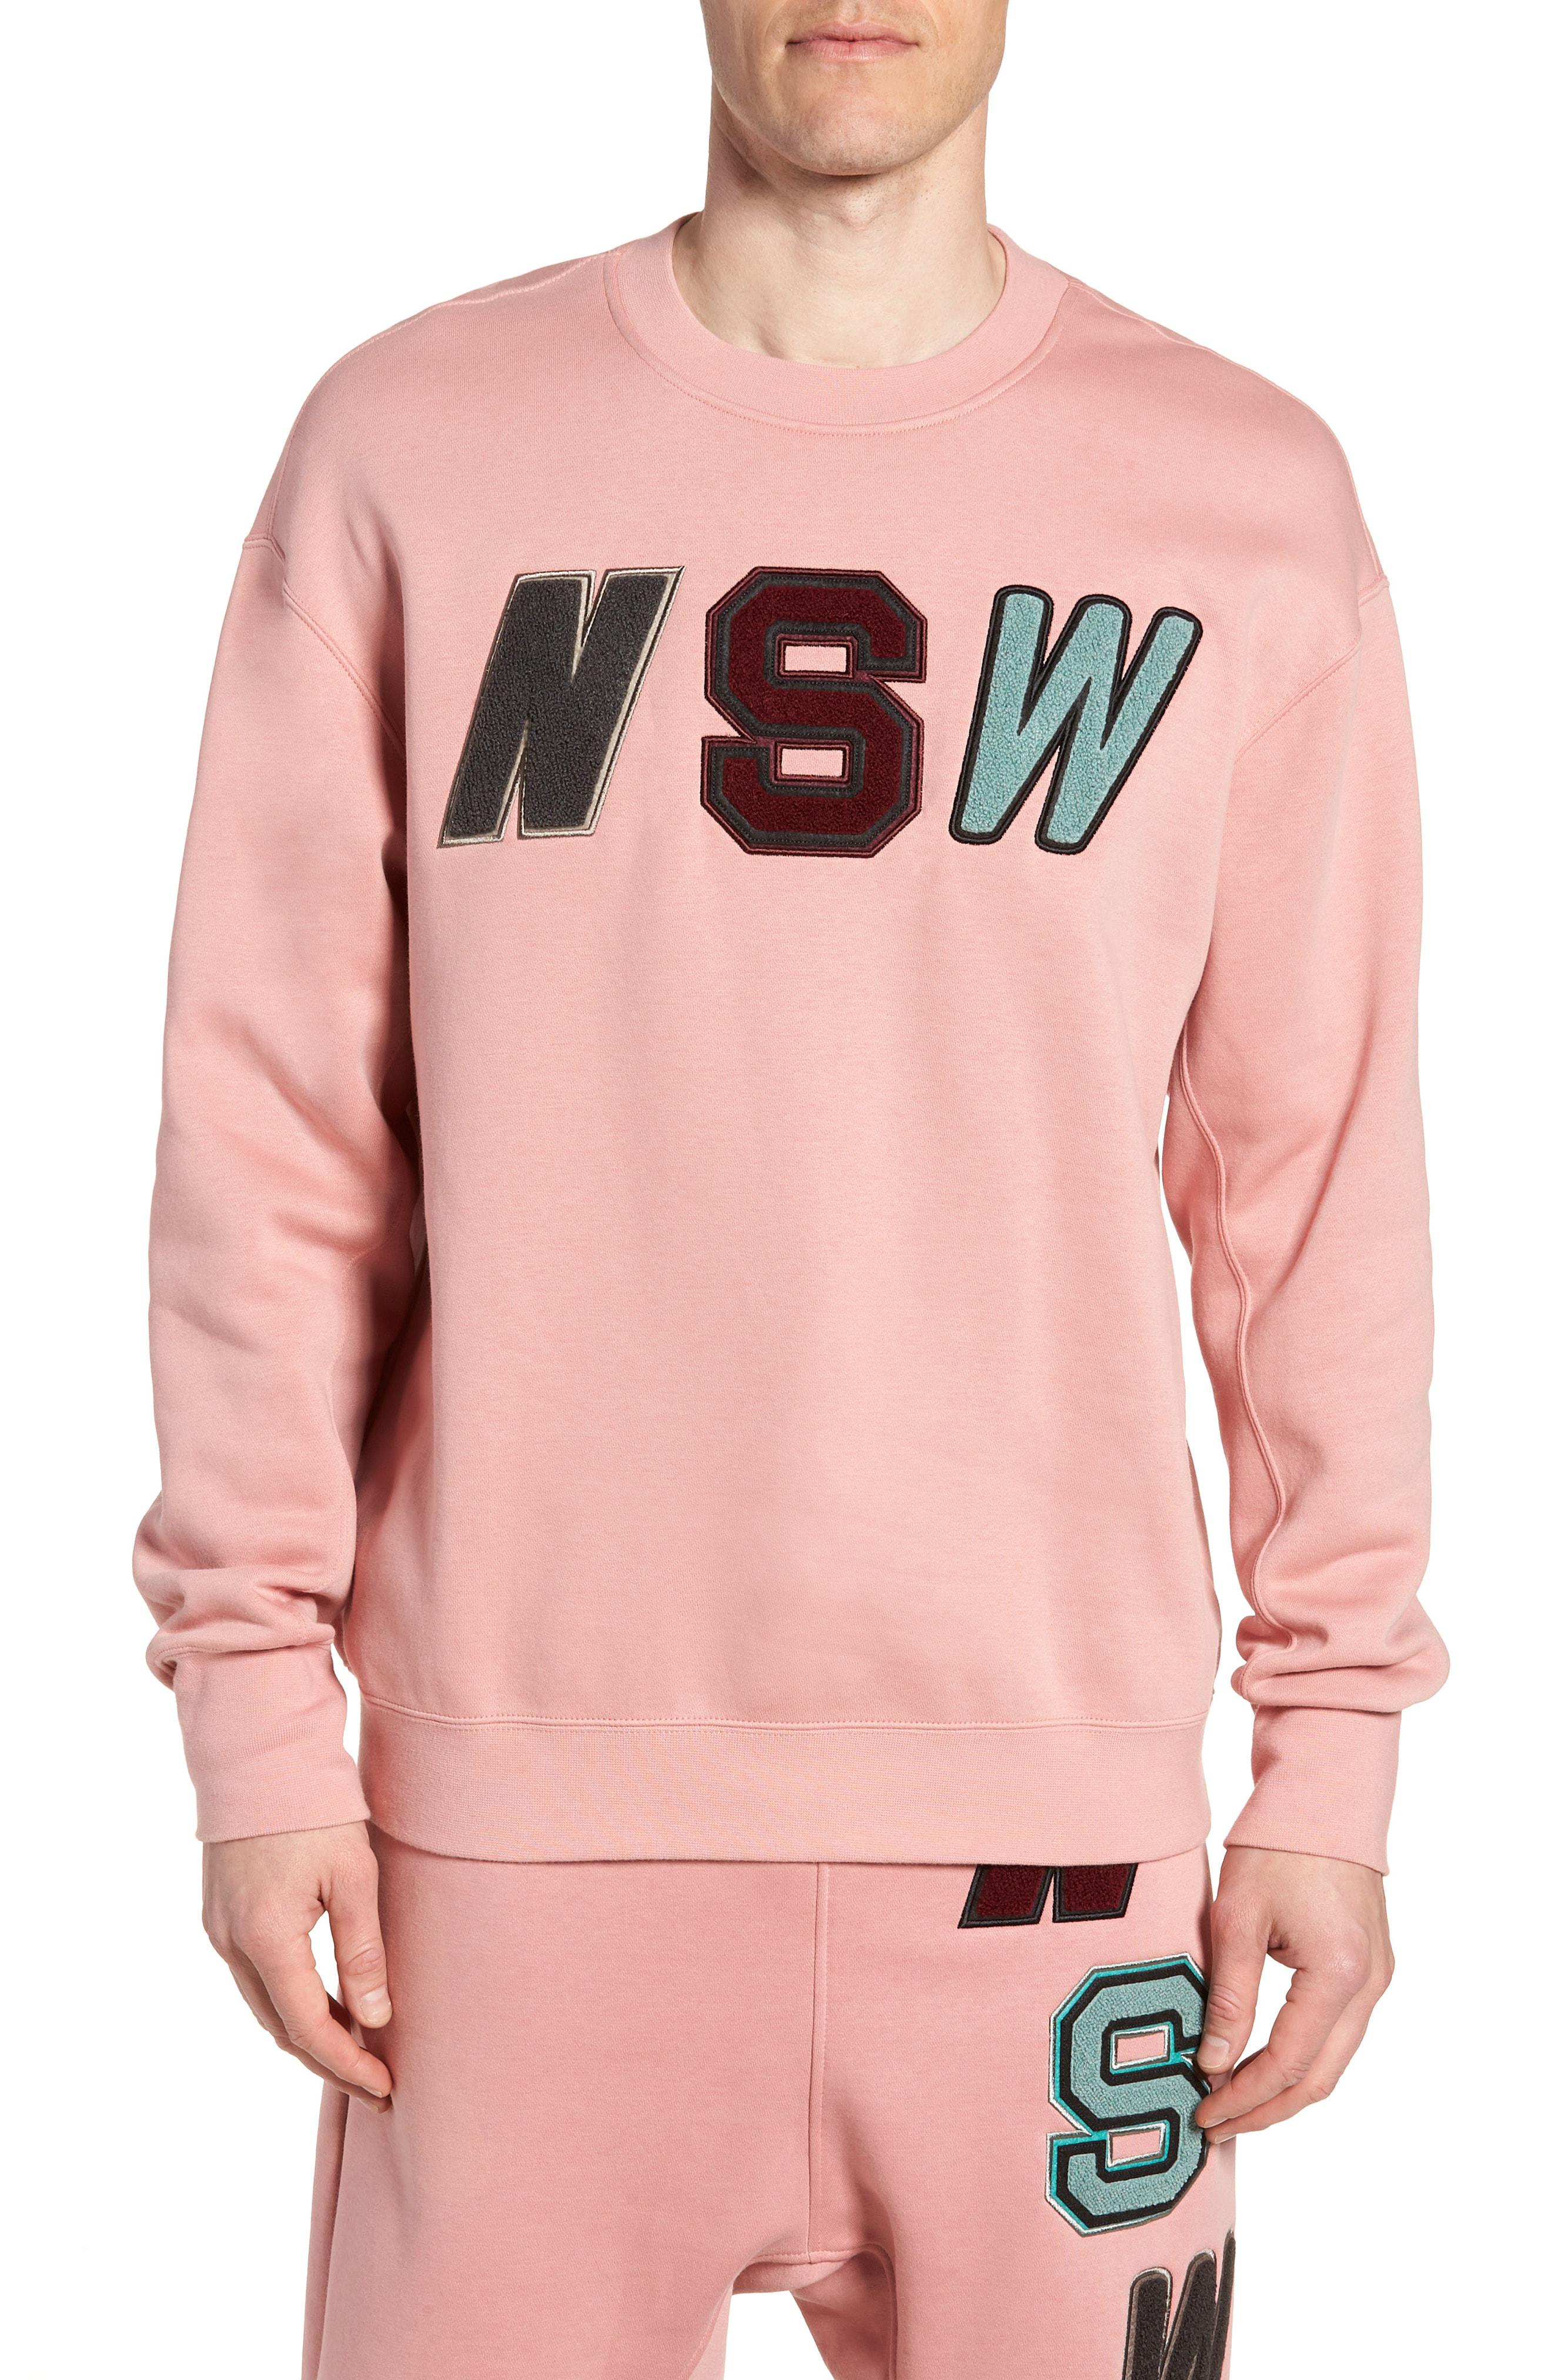 nsw sweatshirt